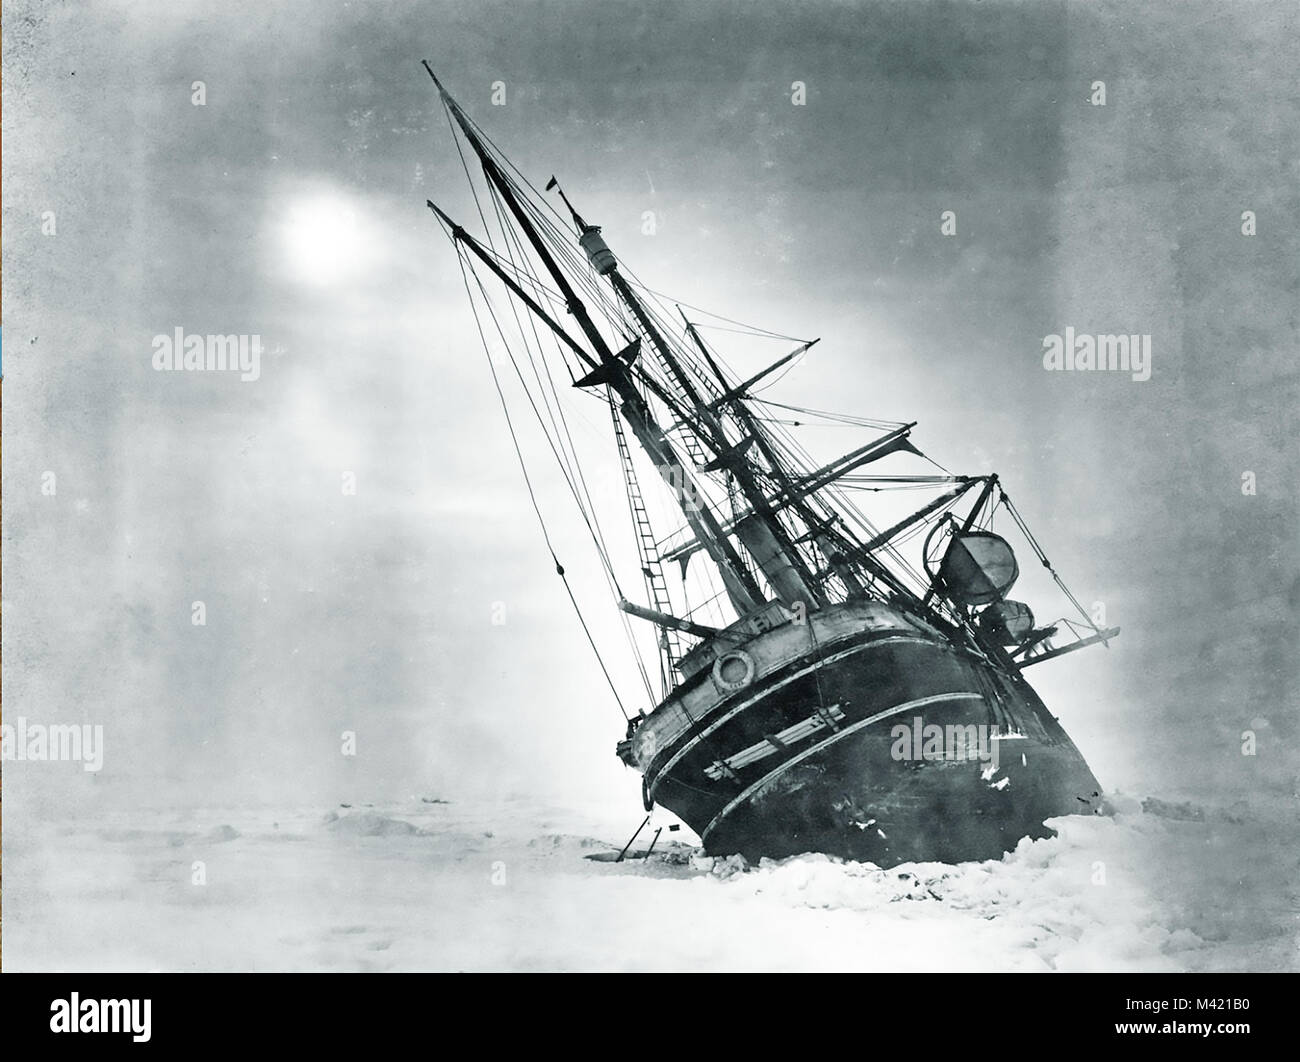 La resistencia de tres mástiles del barco de la expedición a la Antártida de Shackleton 1914-1915 atrapado en el hielo. Foto: Frank Hurley Foto de stock